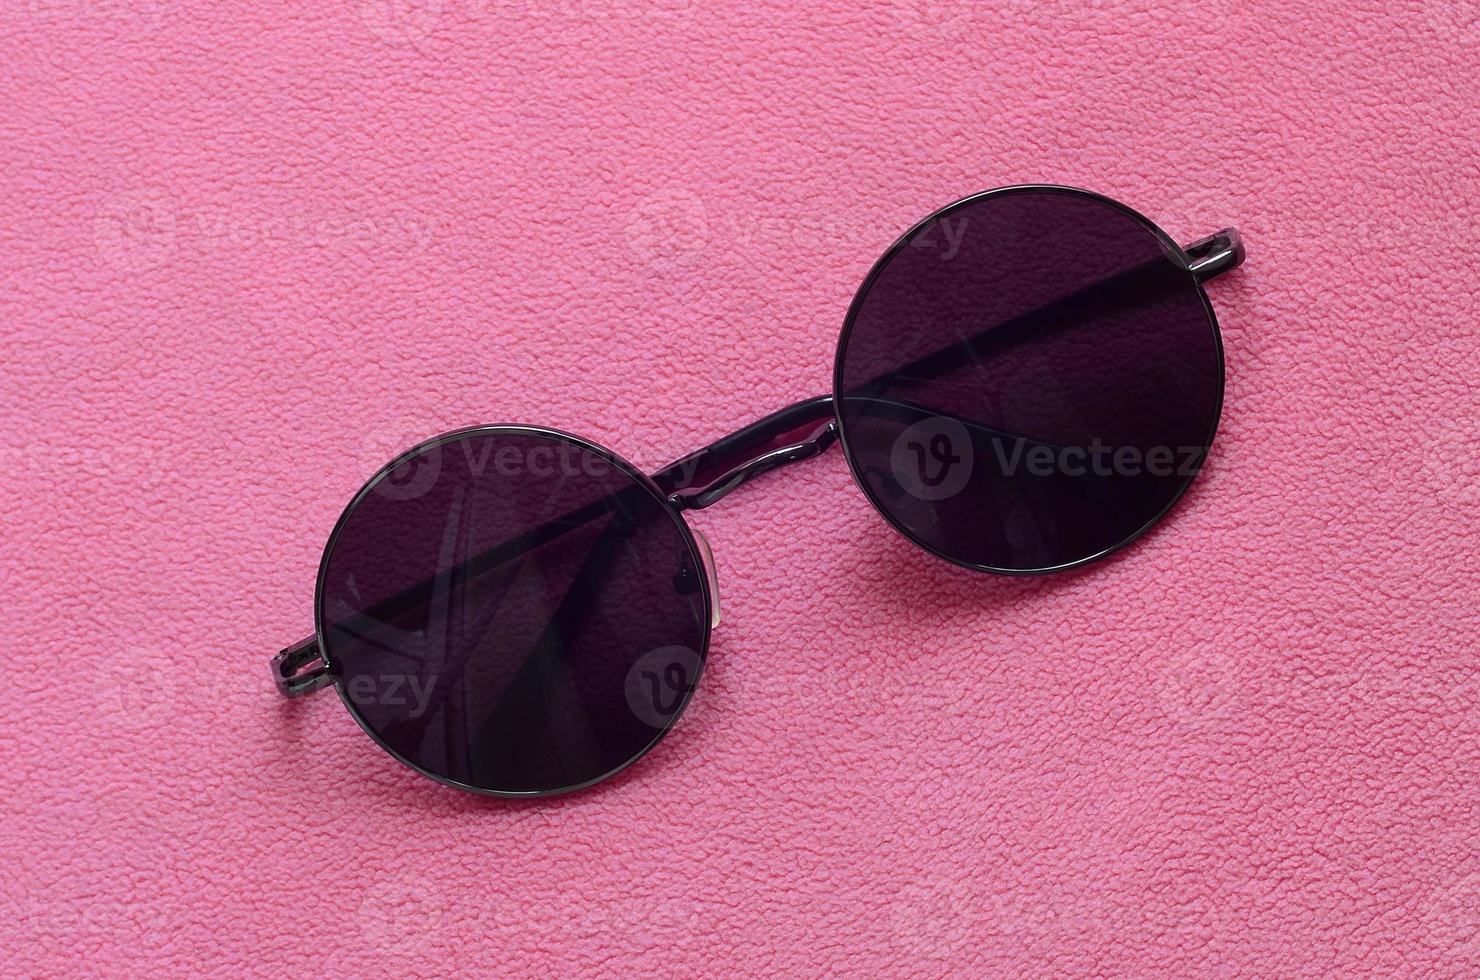 des lunettes de soleil noires élégantes avec des lunettes rondes reposent sur une couverture en tissu polaire rose clair doux et moelleux. image de fond à la mode aux couleurs féminines photo